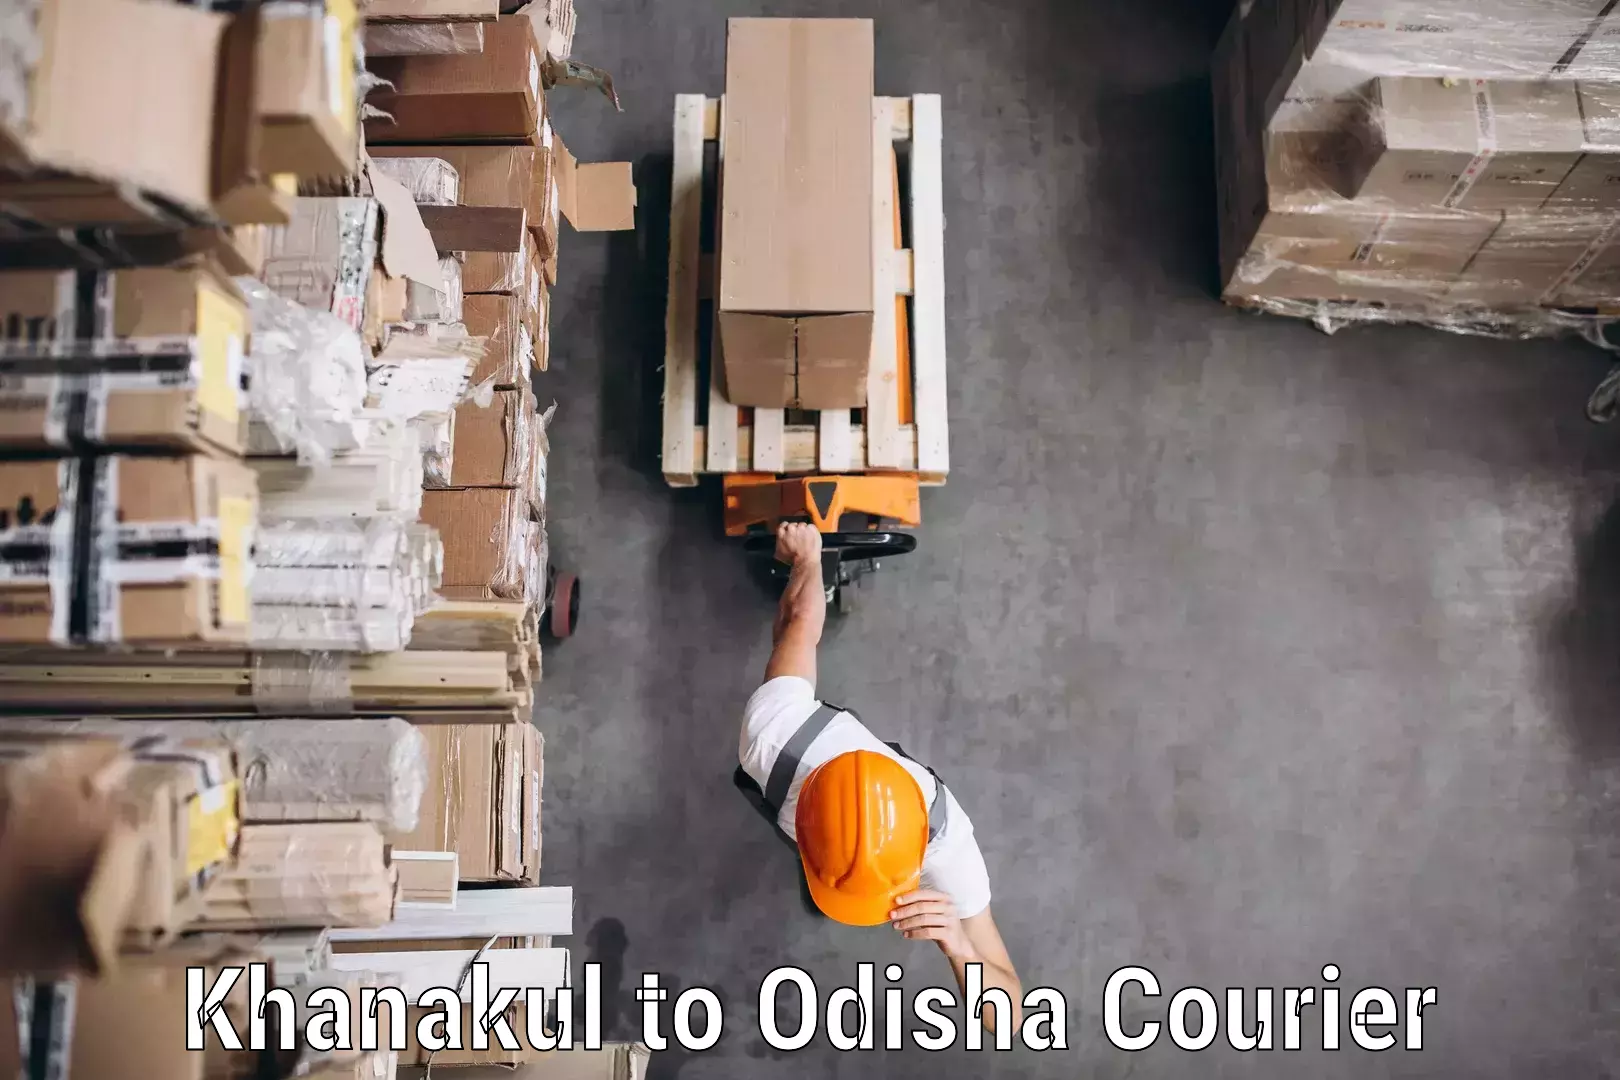 Courier service comparison Khanakul to Odisha